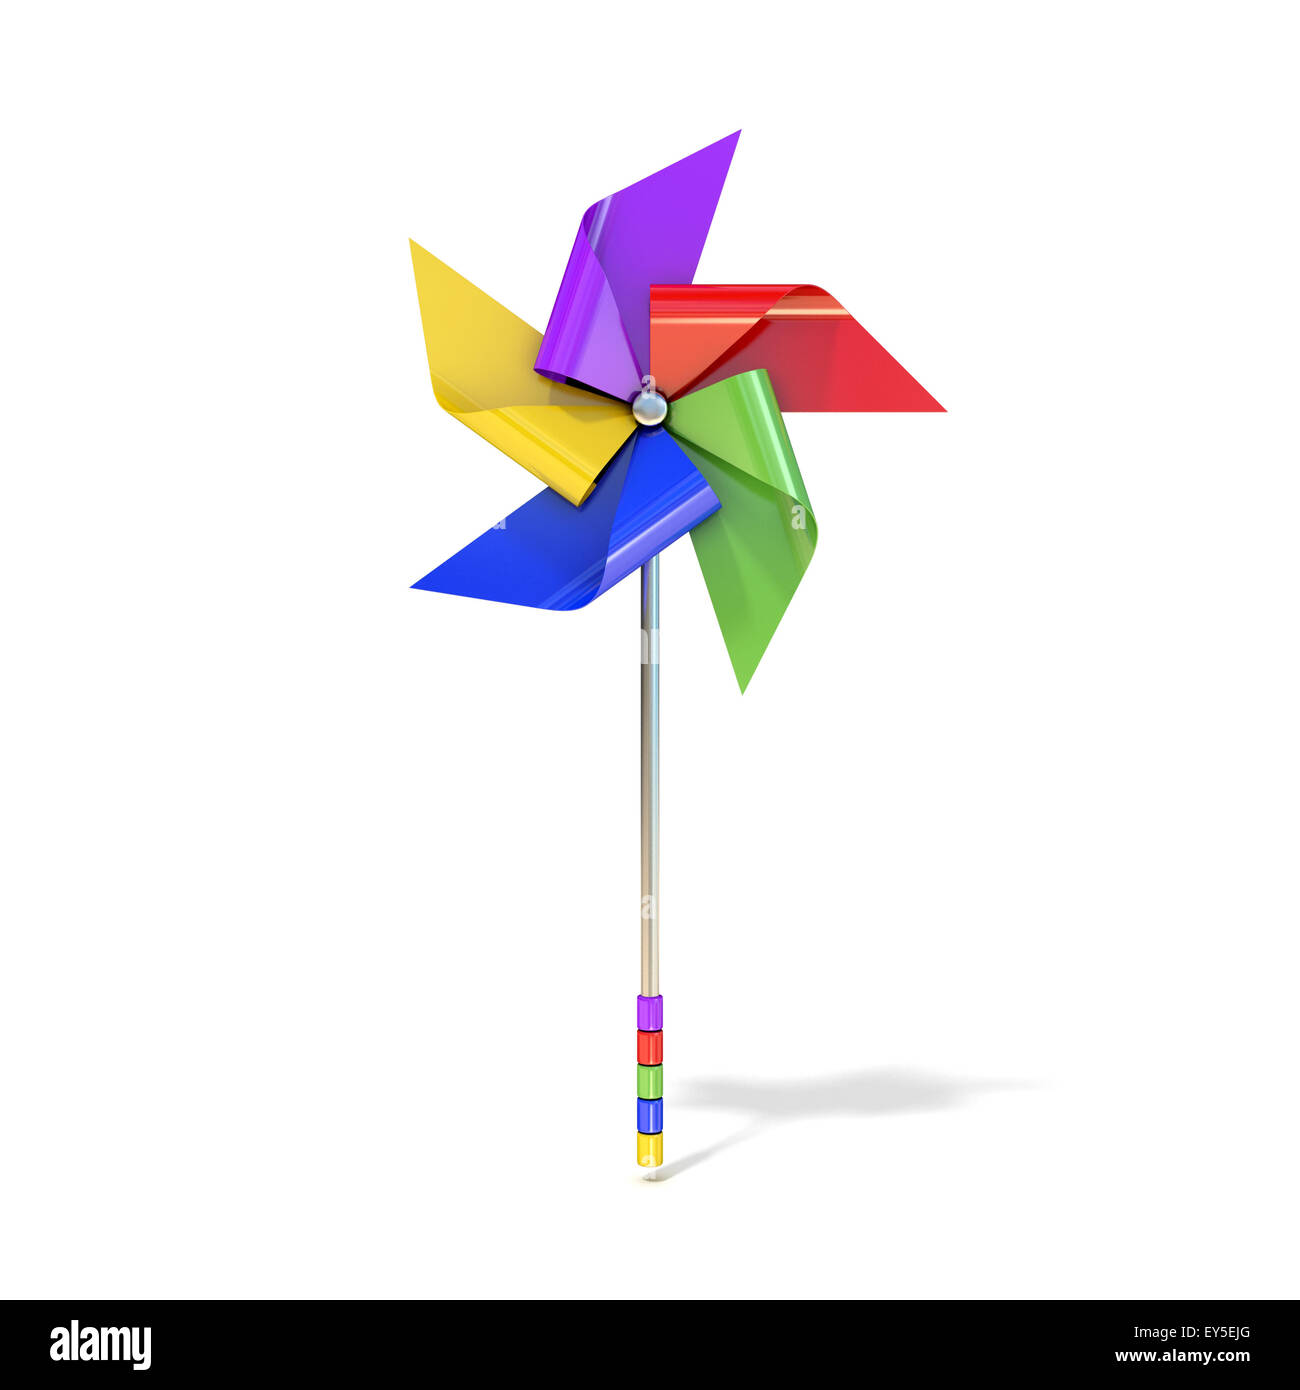 Windrad Spielzeug, fünf doppelseitige, verschiedenfarbige Lamellen.  3D-Render Abbildung isoliert auf weißem Hintergrund Stockfotografie - Alamy